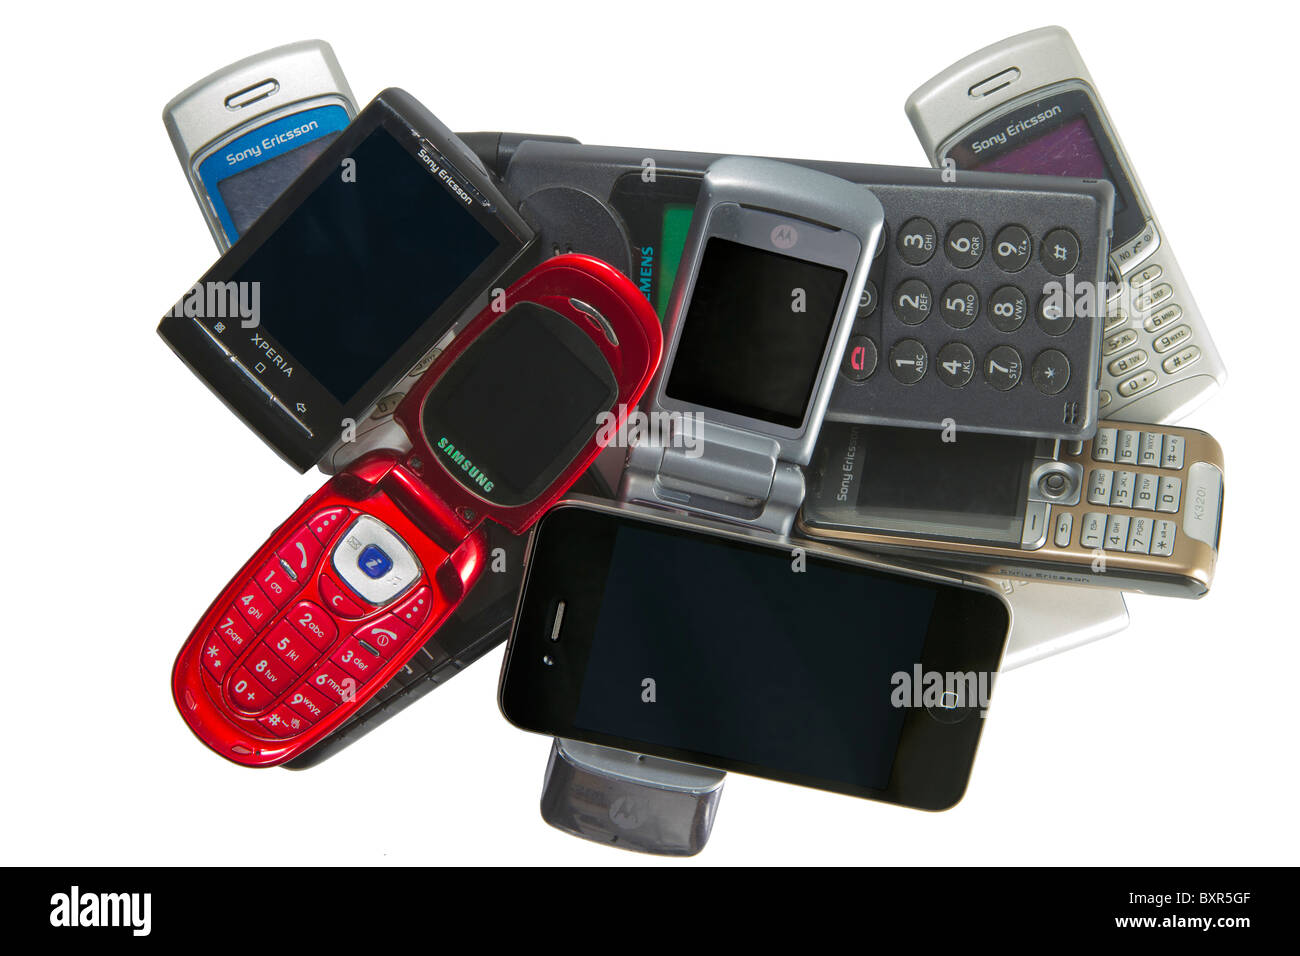 Haufen von alten und neuen Handys, einschließlich das Apple iPhone 4 und das Android-Handy Sony Ericsson Xperia X 10 Mini. Stockfoto